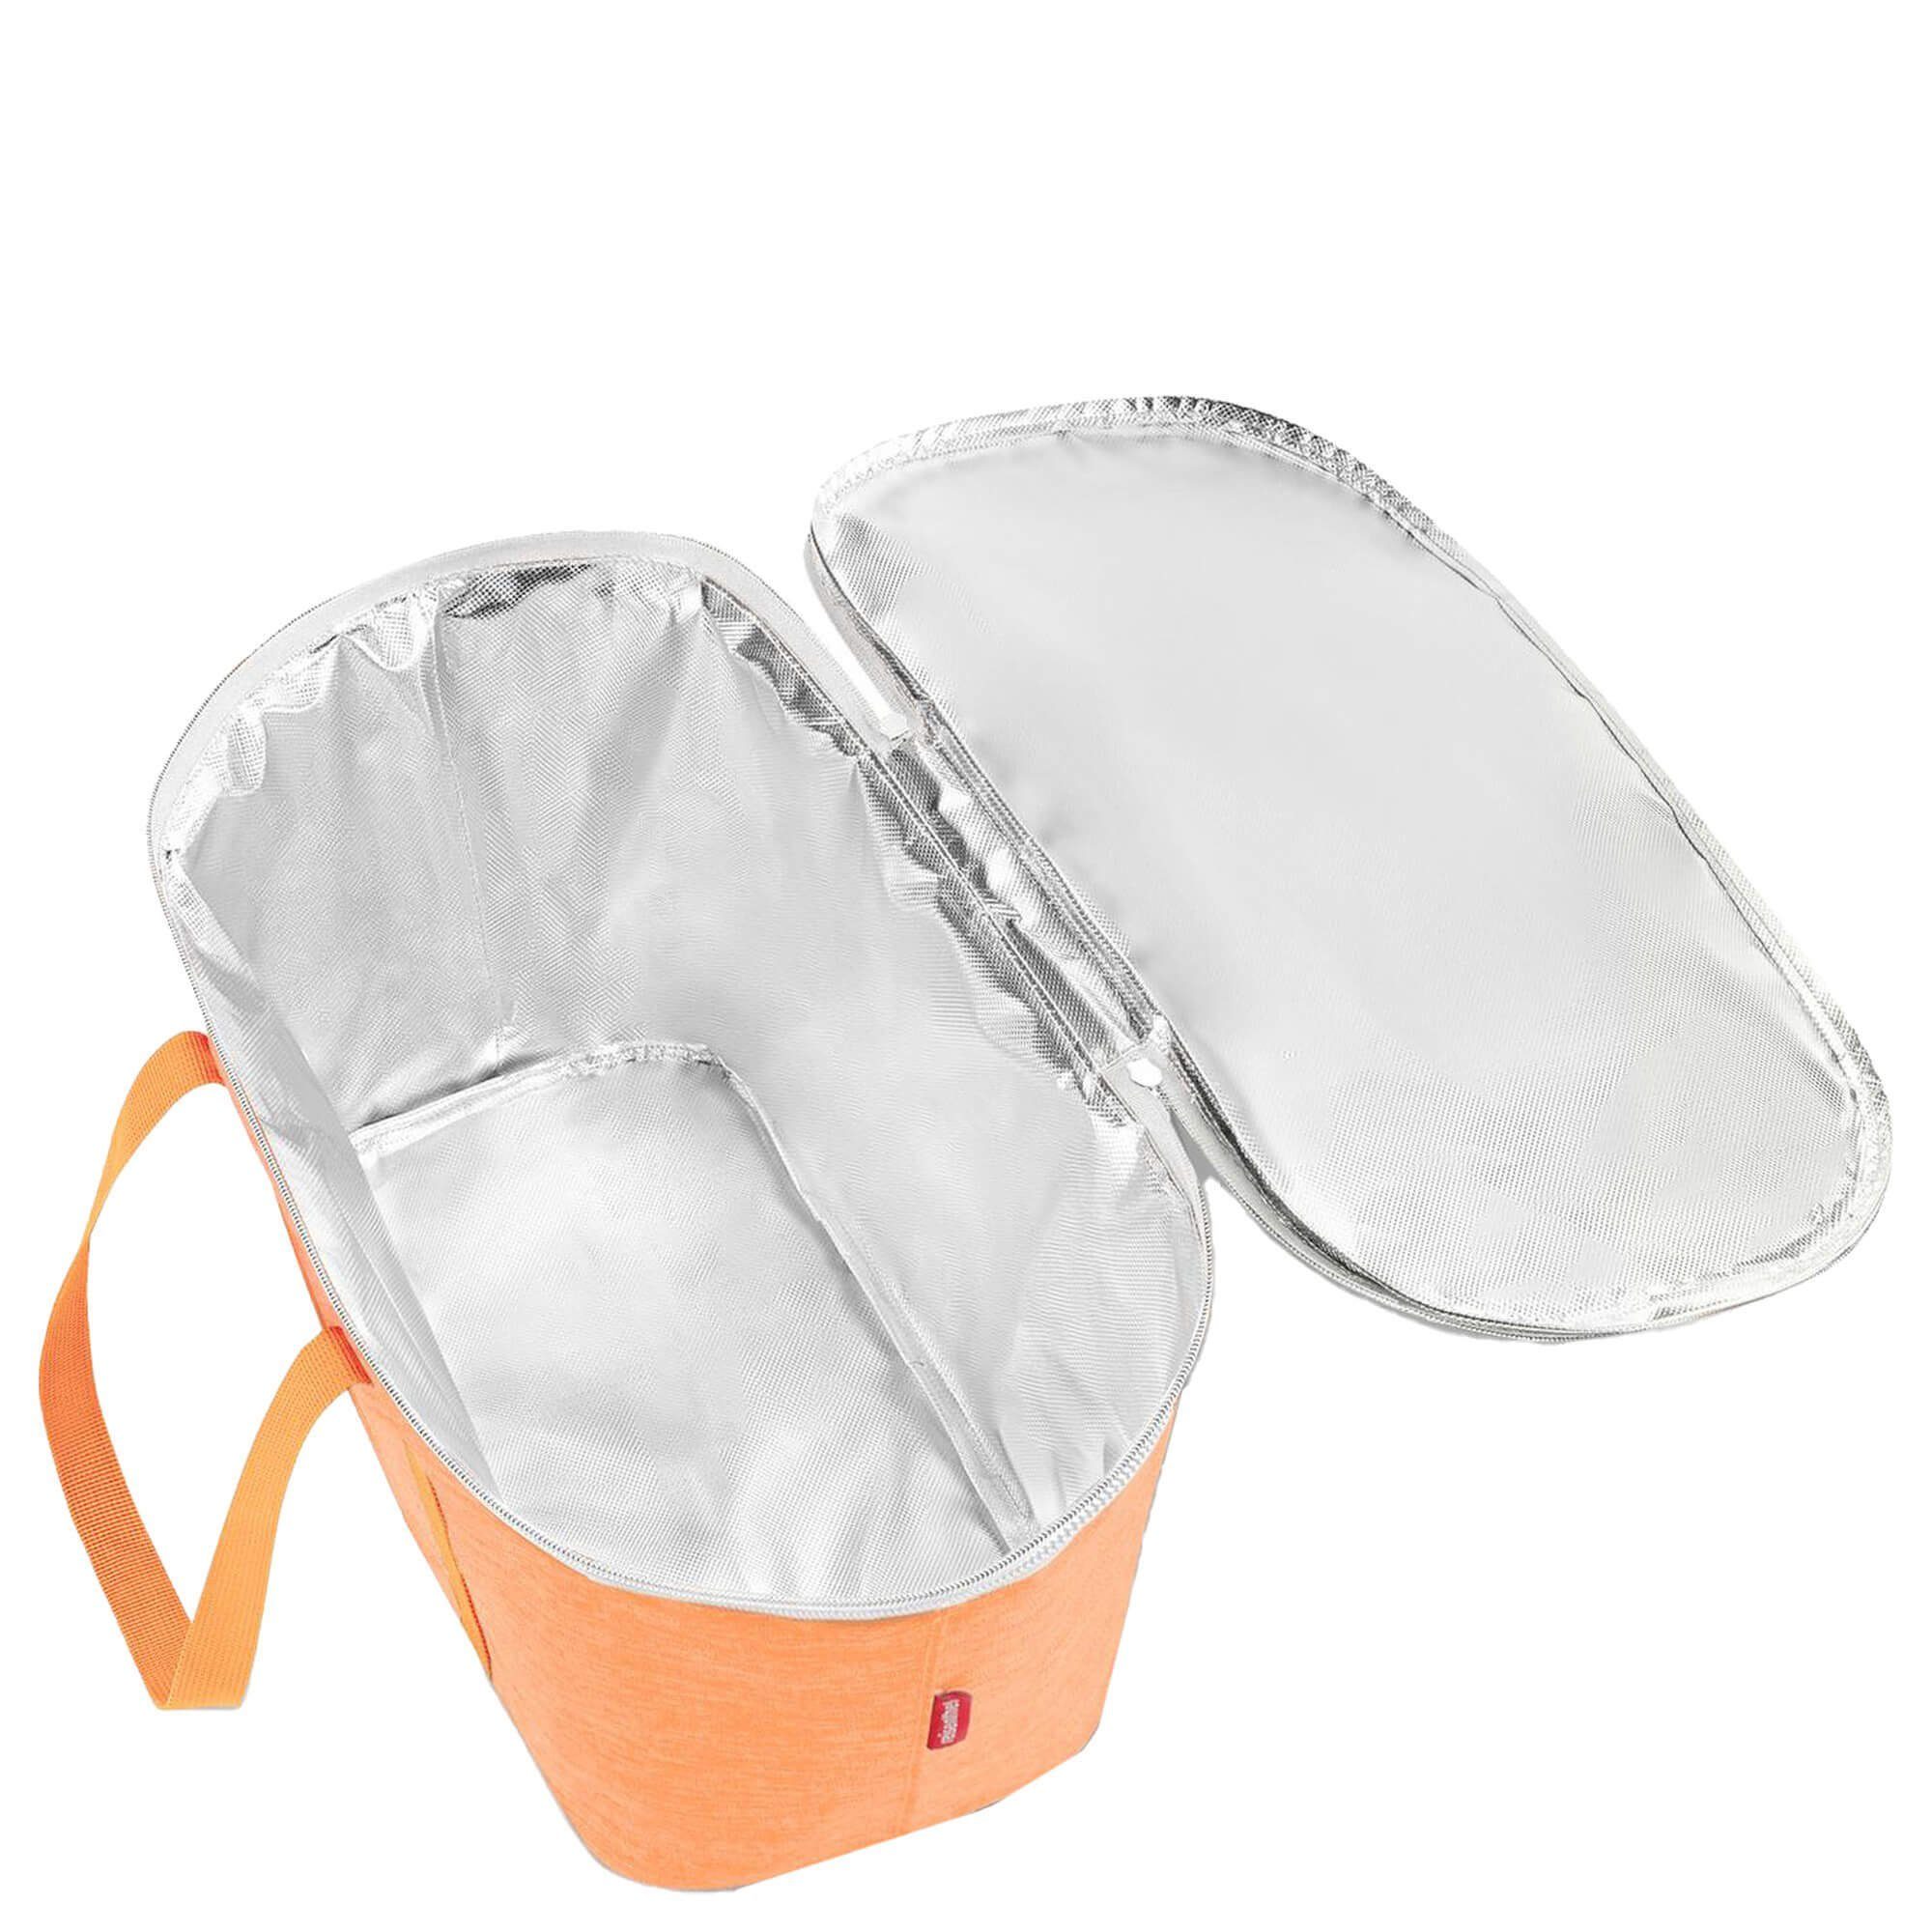 20 Einkaufsbeutel coolerbag cm, REISENTHEL® thermo l apricot - Kühltasche twist 44.5